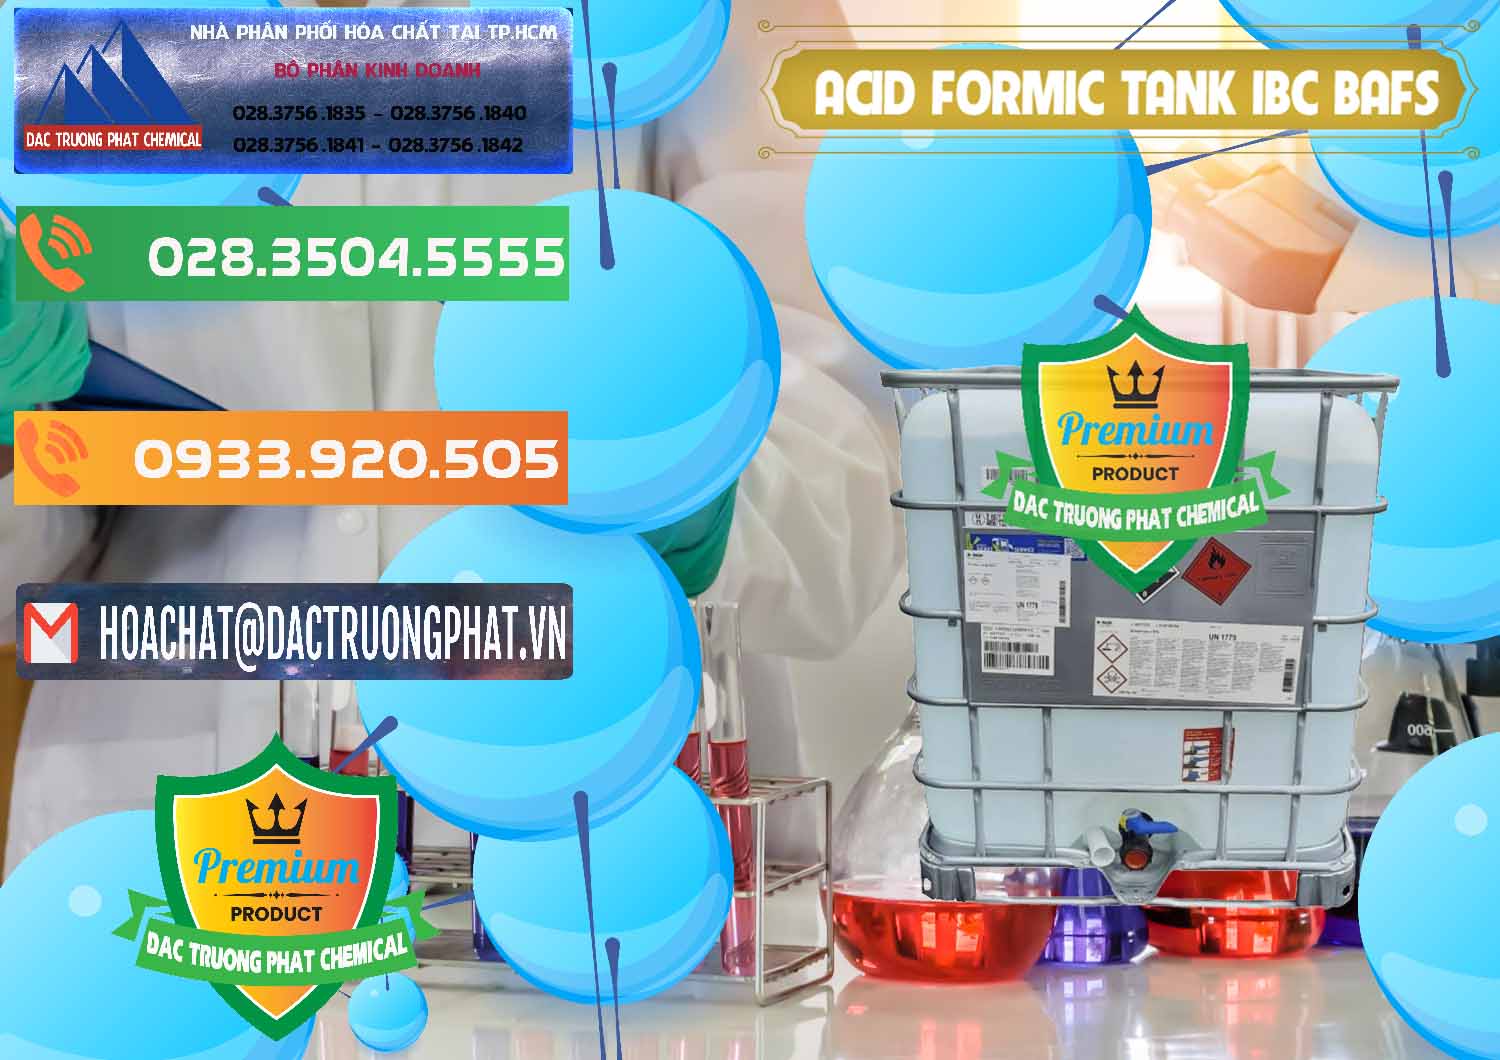 Nơi bán - cung ứng Acid Formic - Axit Formic Tank - Bồn IBC BASF Đức - 0366 - Công ty cung cấp - bán hóa chất tại TP.HCM - hoachatxulynuoc.com.vn